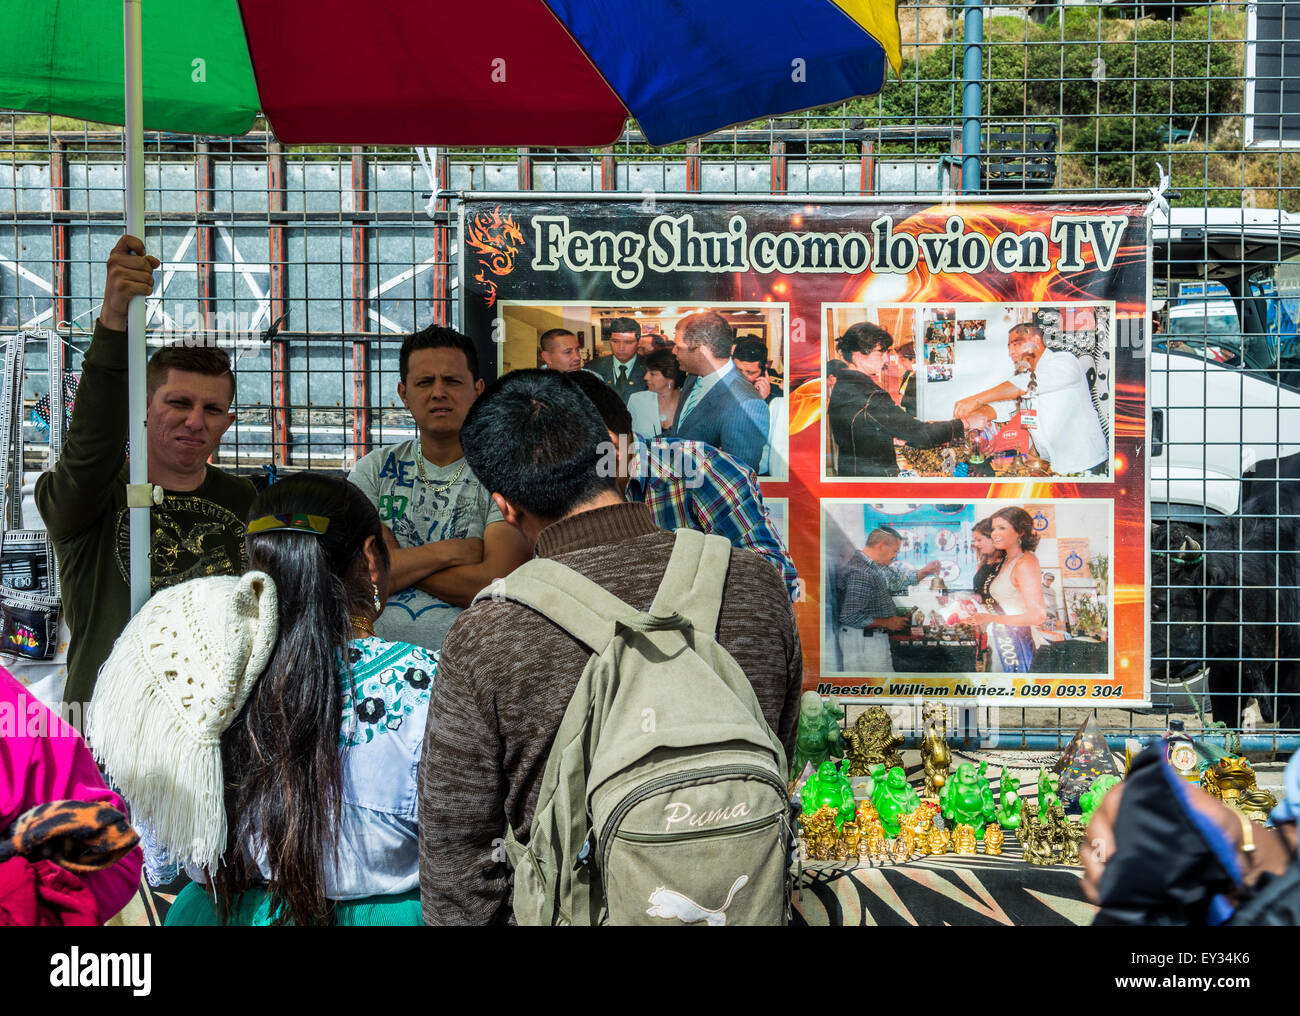 Un stand vendant des gadgets de Feng Shui au marché local. Otavalo, Équateur. Banque D'Images